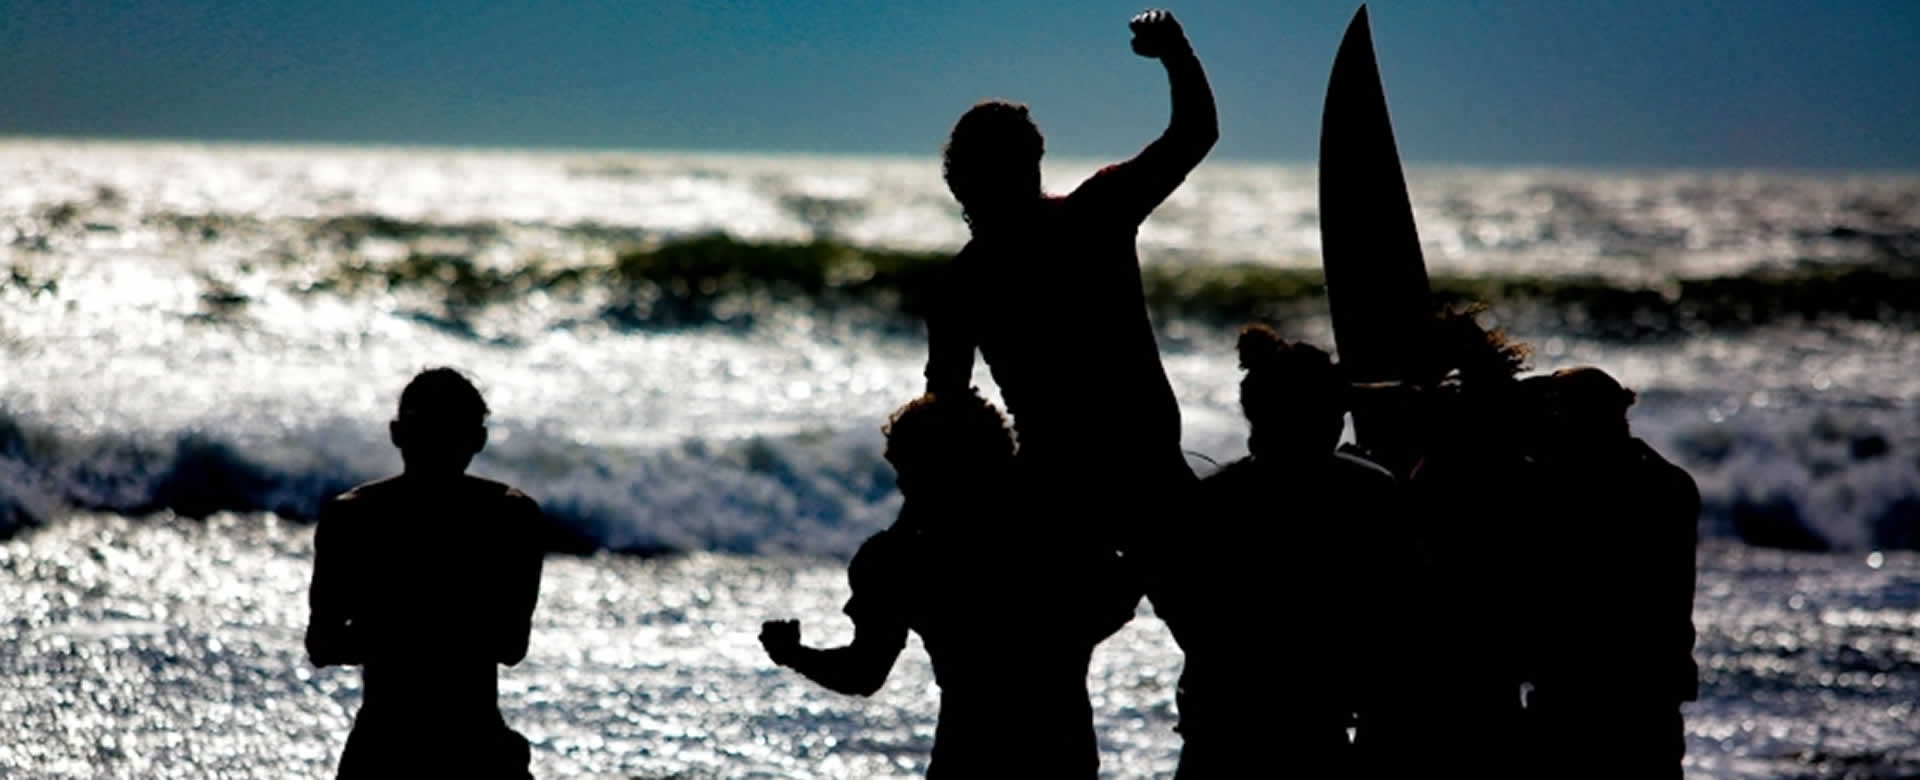 Espectacular Torneo Nacional de Surf 2020 en playas de la Boquita